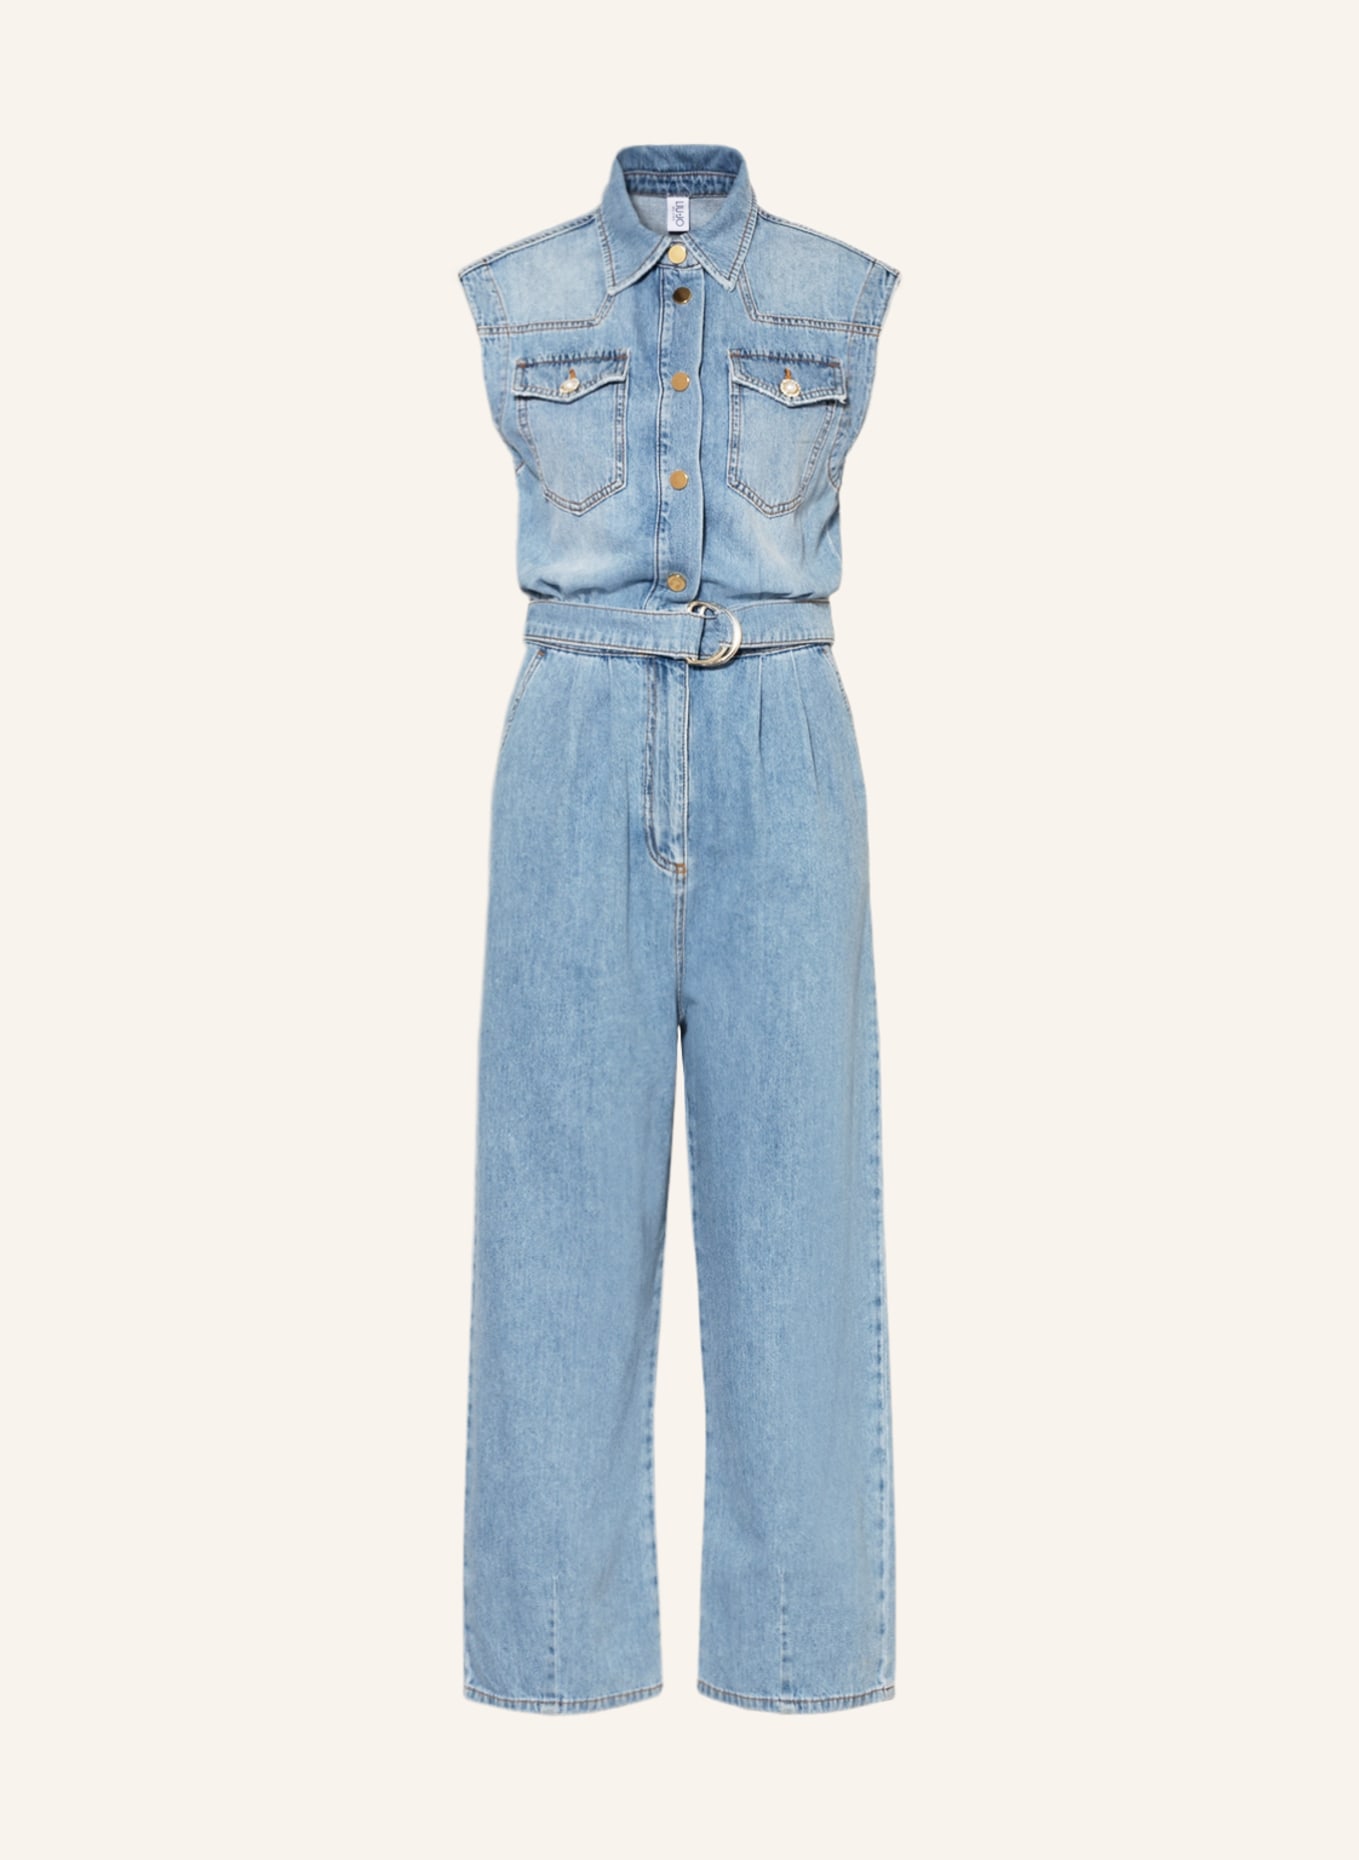 LIU JO Jeans-Jumpsuit mit Schmucksteinen, Farbe: 78436 D.blue rebel wash (Bild 1)